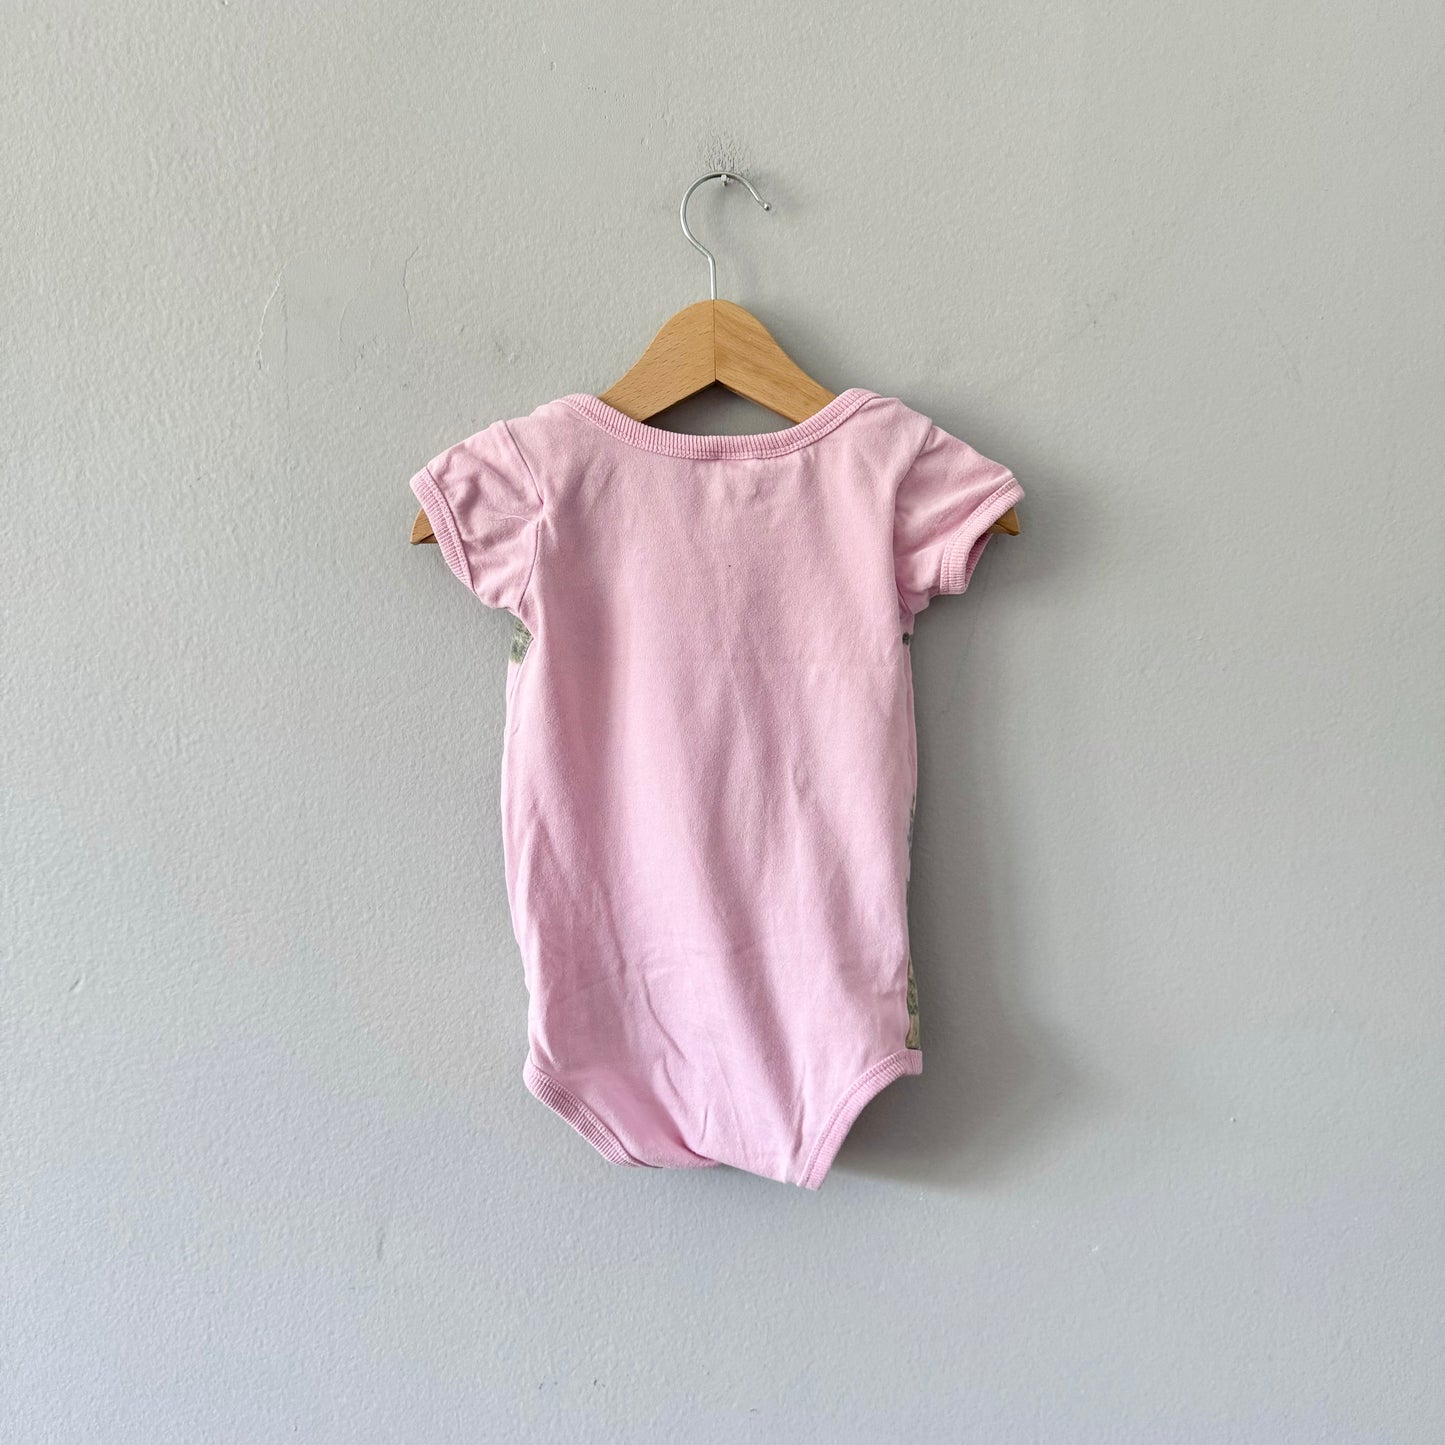 Rock Your Baby / Pink short sleeve onesie / 12-18M